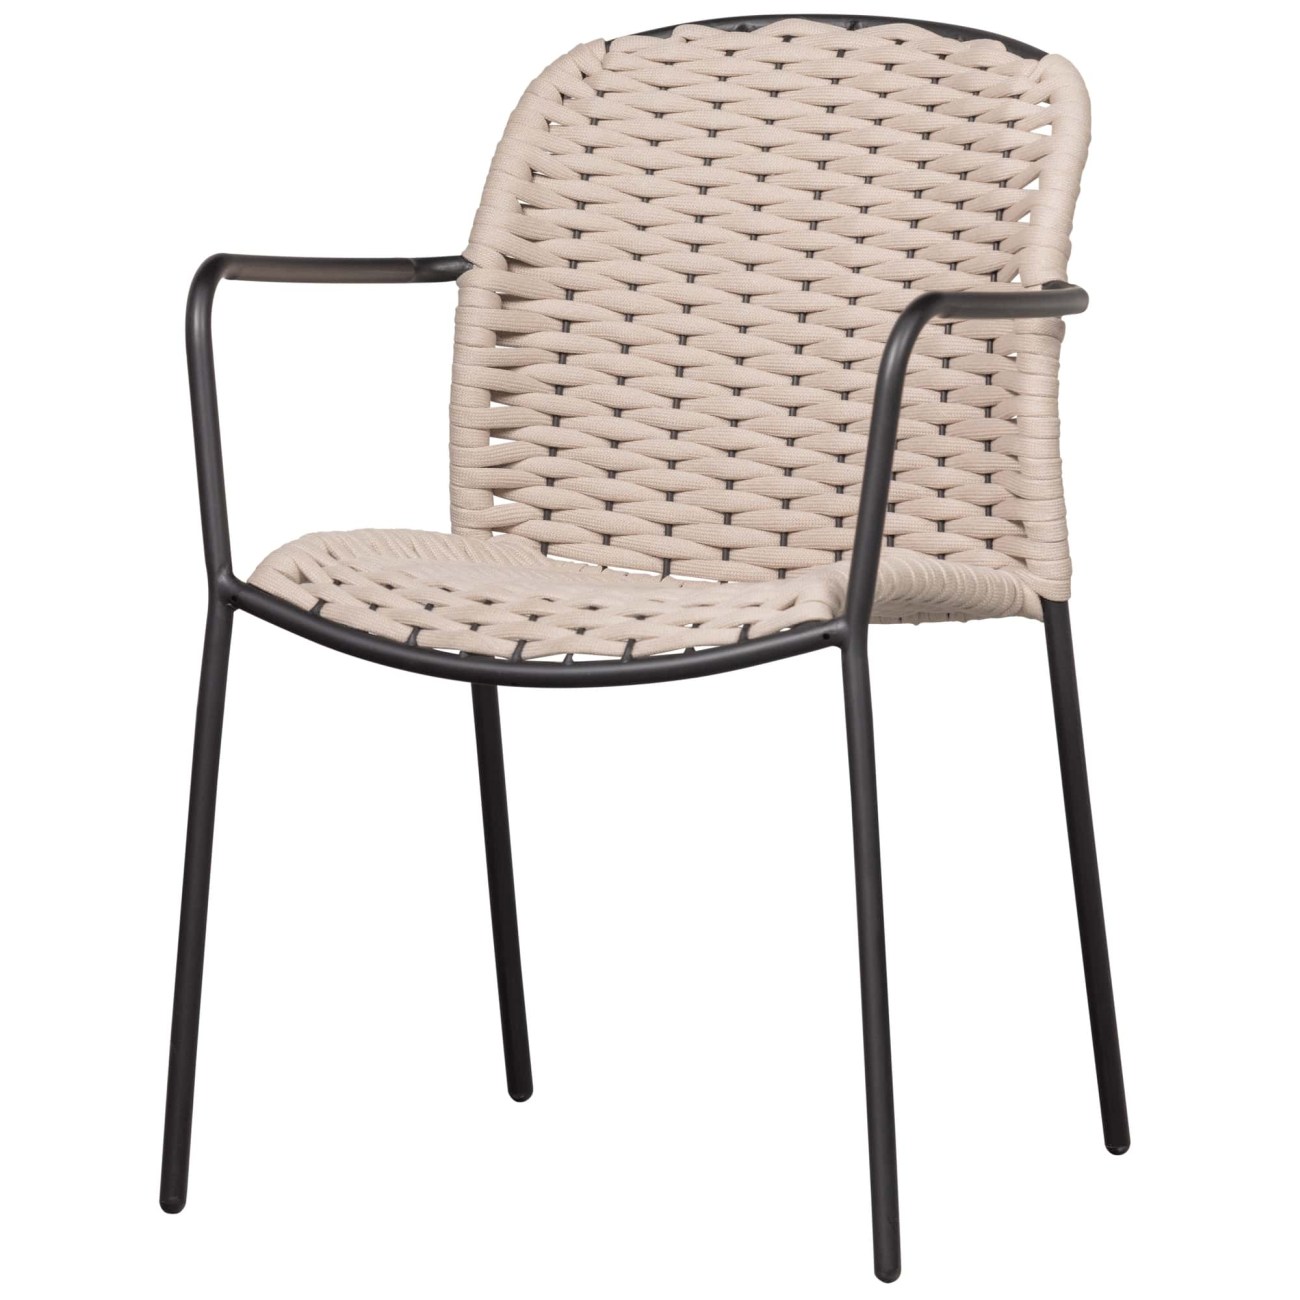 Der Gartenstuhl Taki überzeugt mit seinem modernen Design. Gefertigt wurde er aus Seilen aus Kunststoff, welche einen Sand Farbton besitzt. Das Gestell ist aus Metall und hat eine schwarze Farbe. Der Stuhl ist stapelbar.